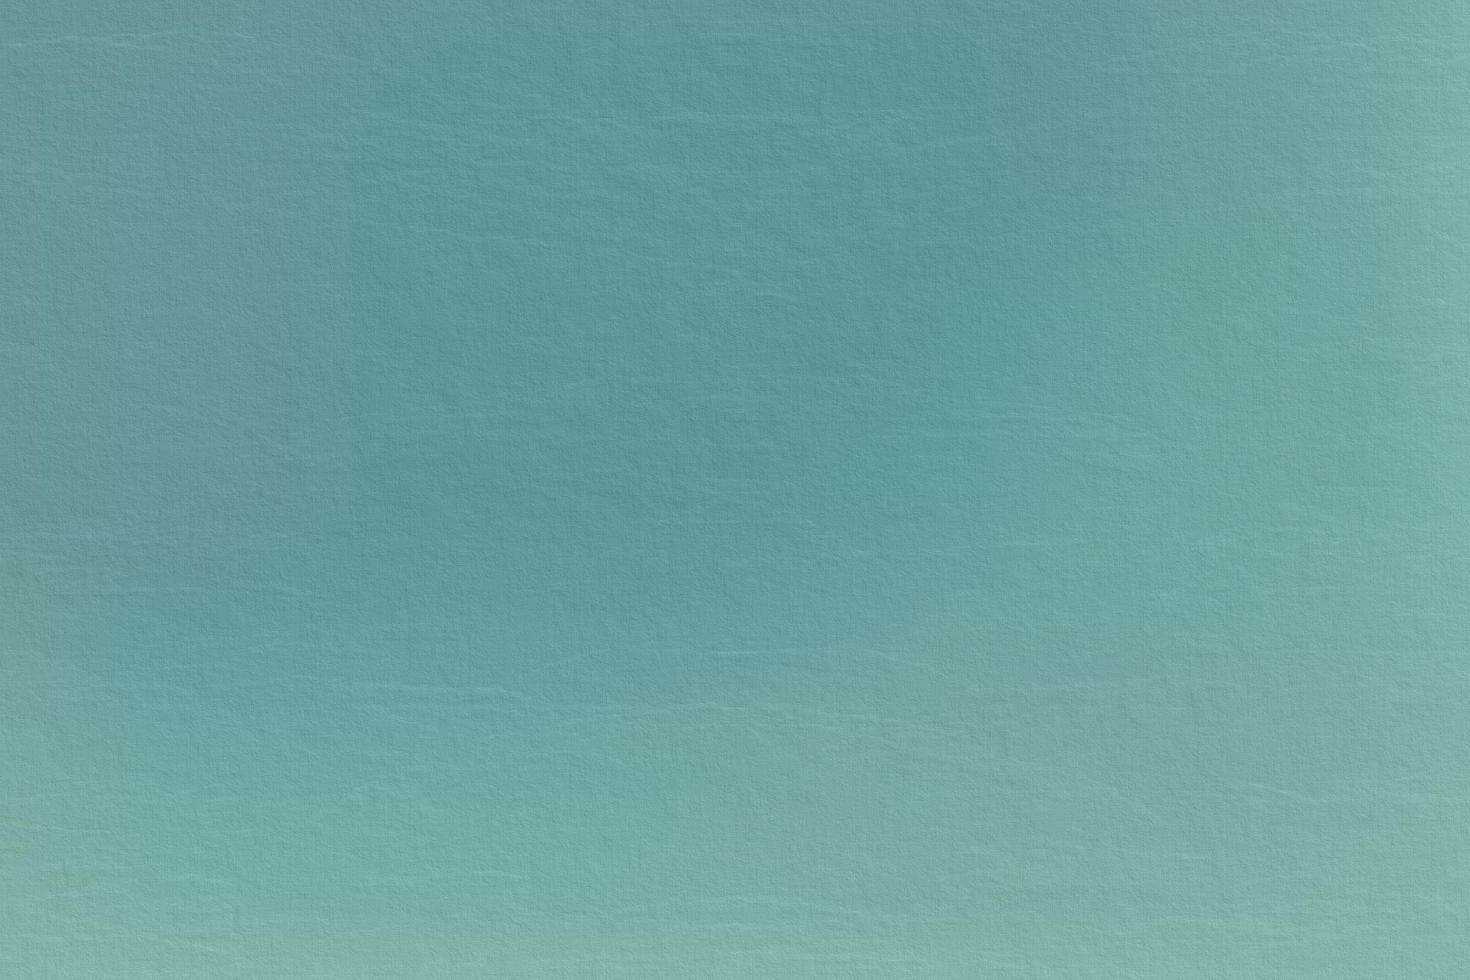 textura de papel reciclado verde azulado, fondo abstracto foto